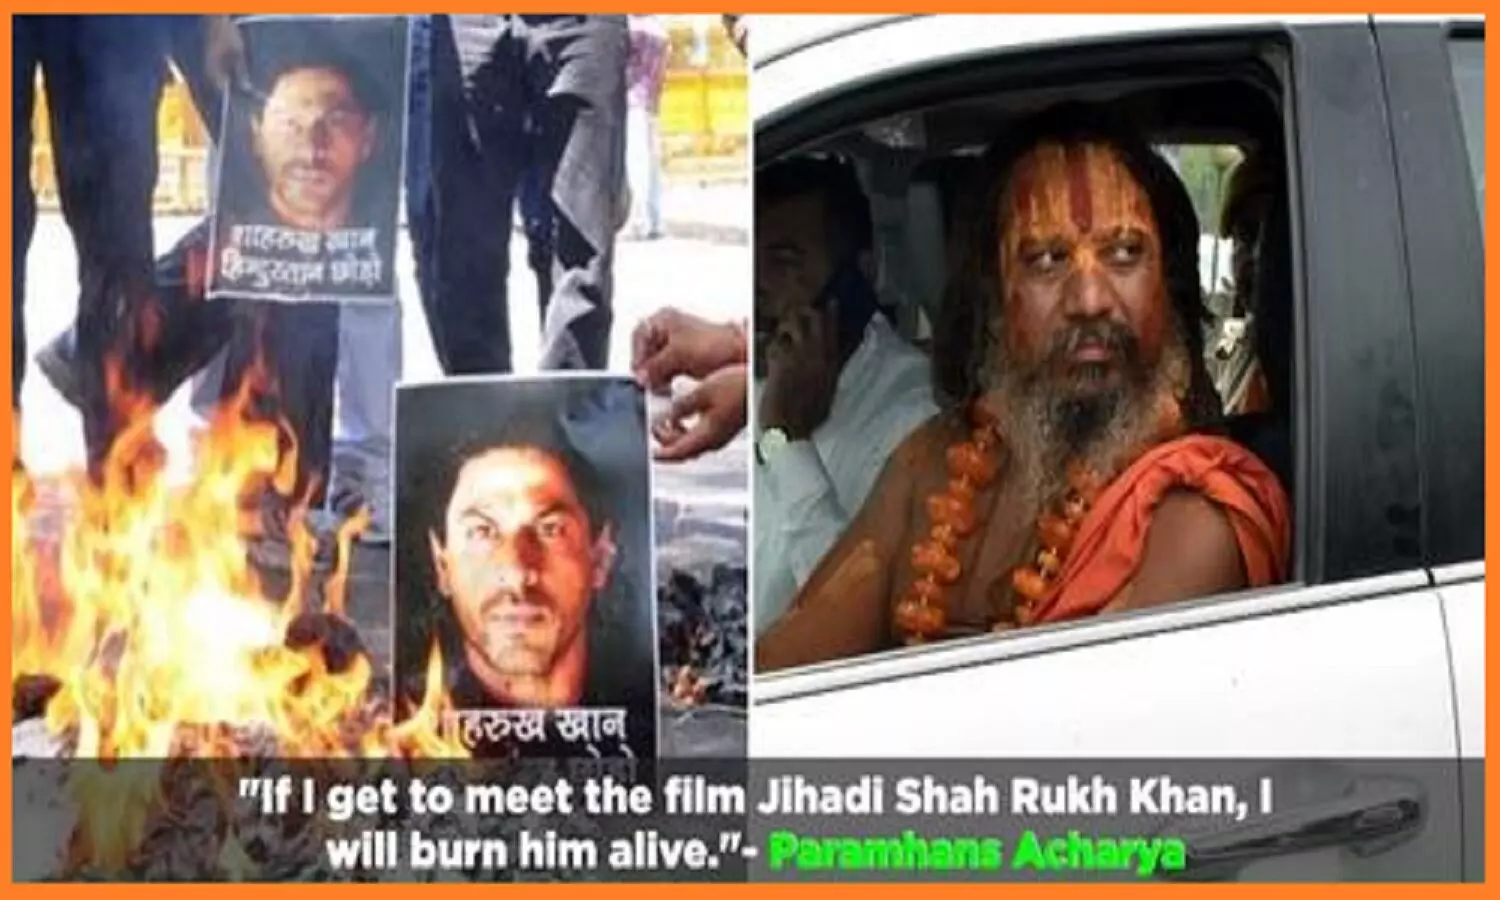 पठान विवाद: अगर मैं जिहादी शाहरुख़ खान से मिला तो उसे जिंदा जला दूंगा- परमहंस आचार्य